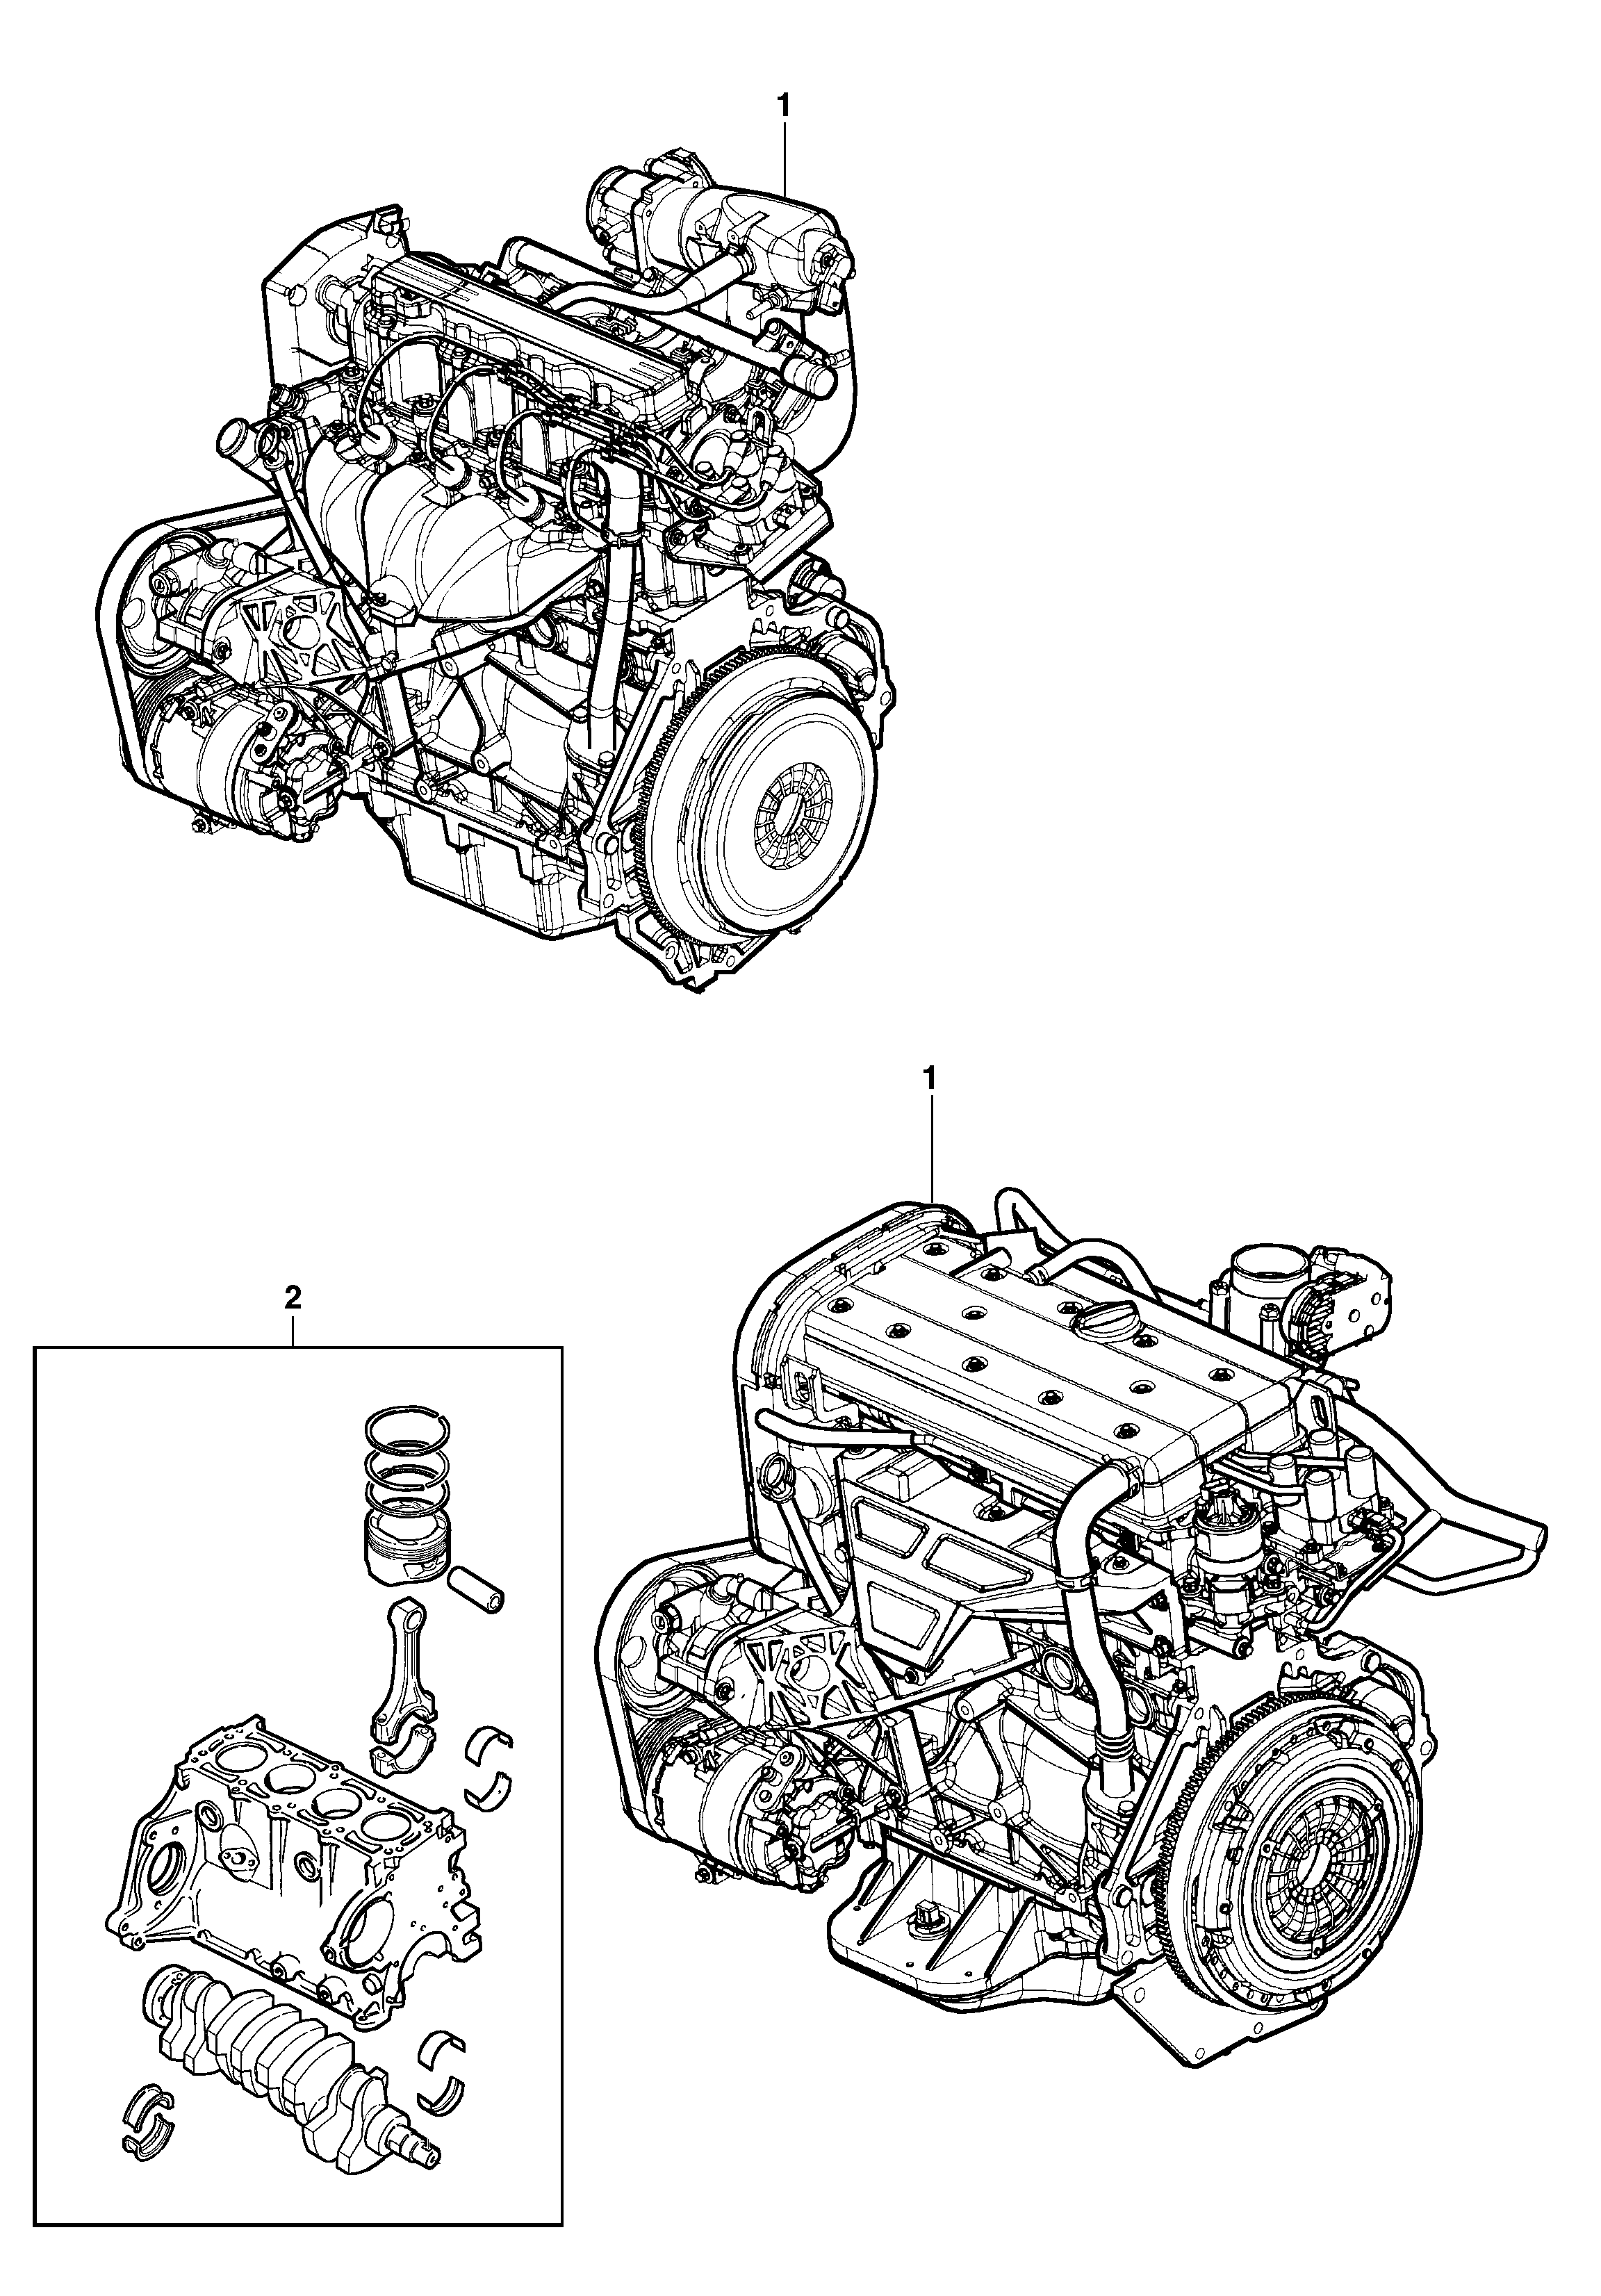 Motor completo y parcial